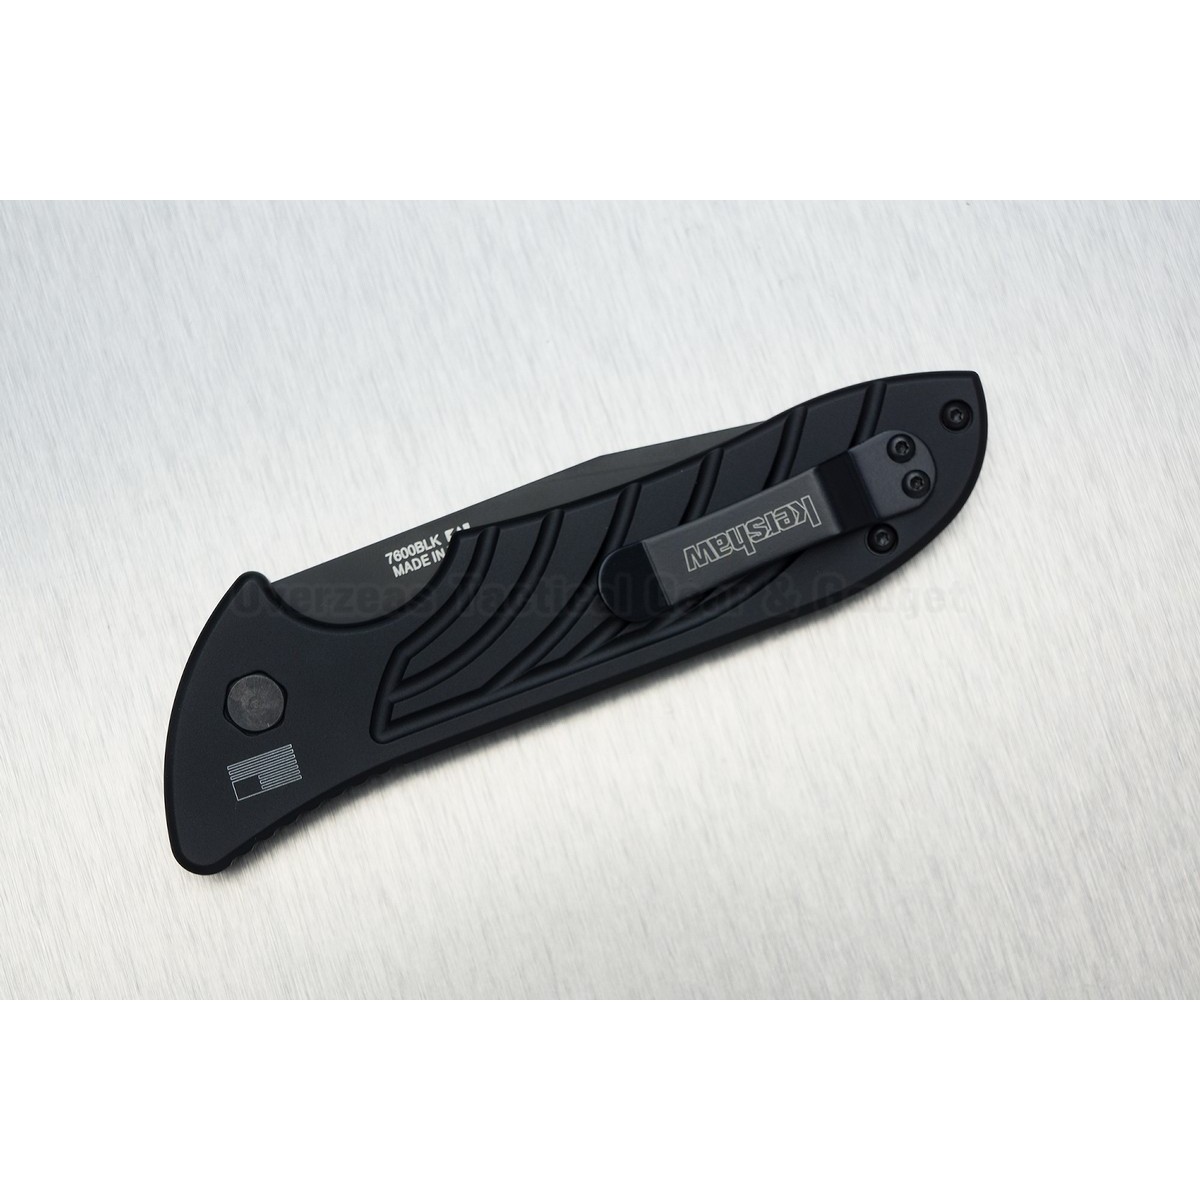 มีดออโต้ Kershaw Emerson Launch 5 Automatic Knife (3.4" Black) 7600BLK